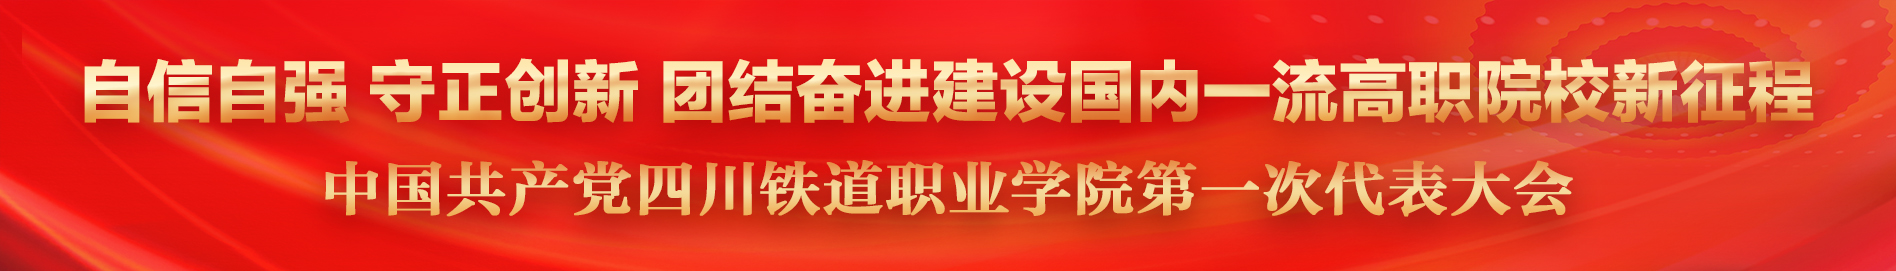 中国共产党全球最大的休闲平台第一次代表大会